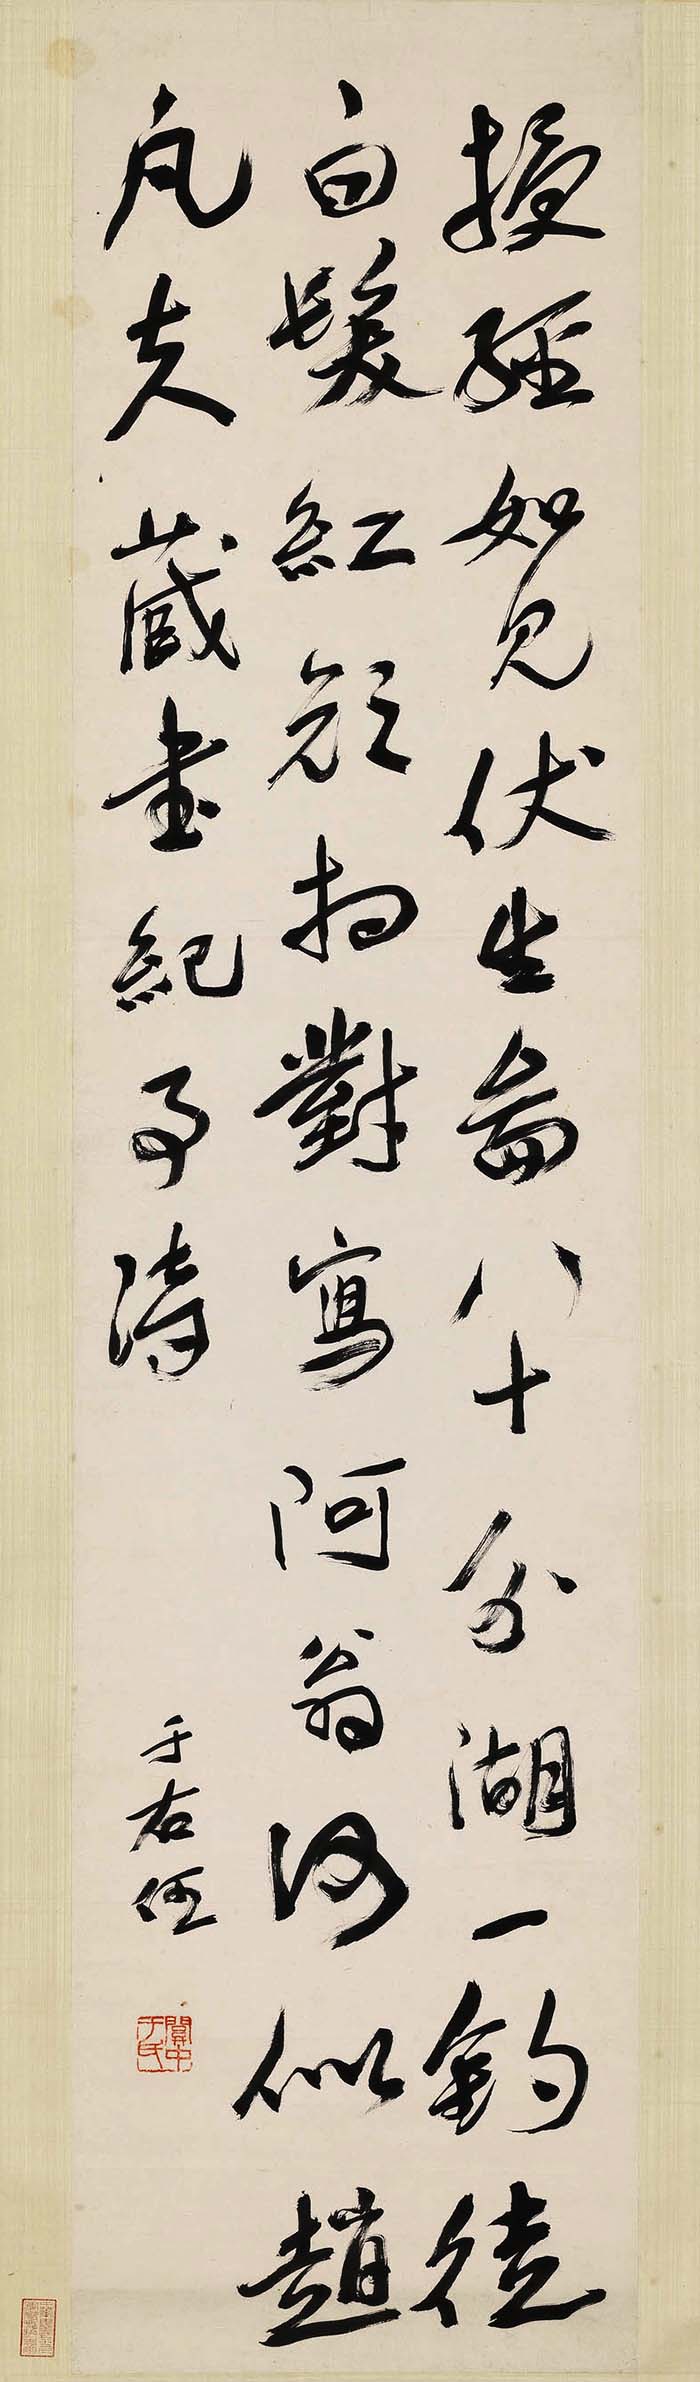 于右任《行书藏书纪事诗轴》-台北故宫博物院藏(图1)